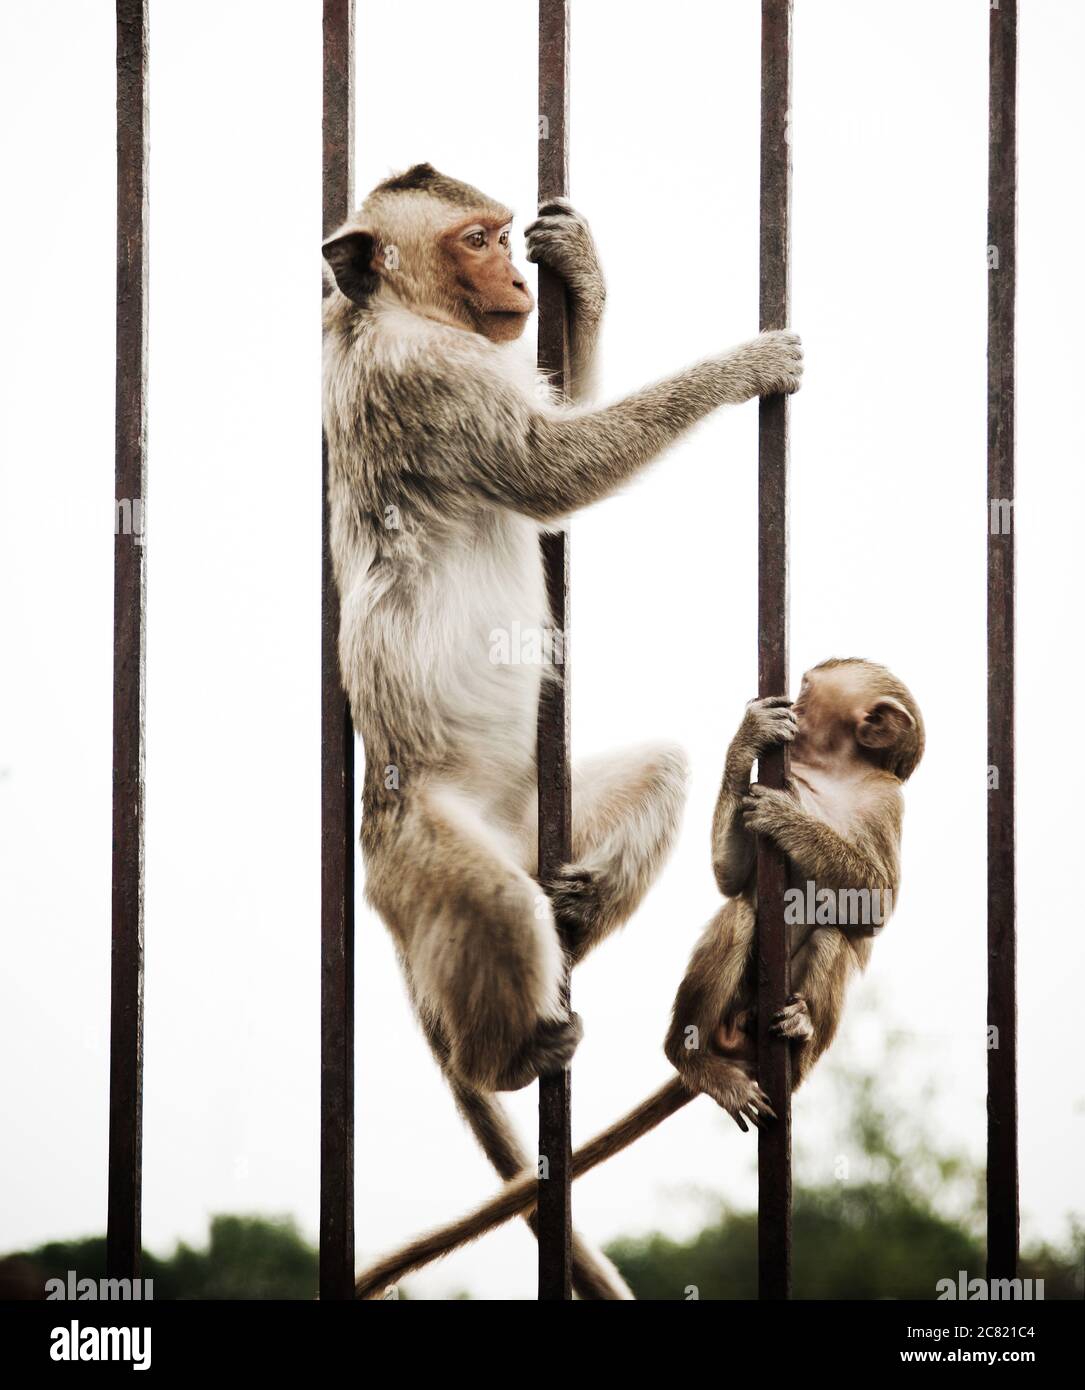 Monkey joue sur une porte en acier, Lophuri, Thaïlande, Asie du Sud-est Banque D'Images